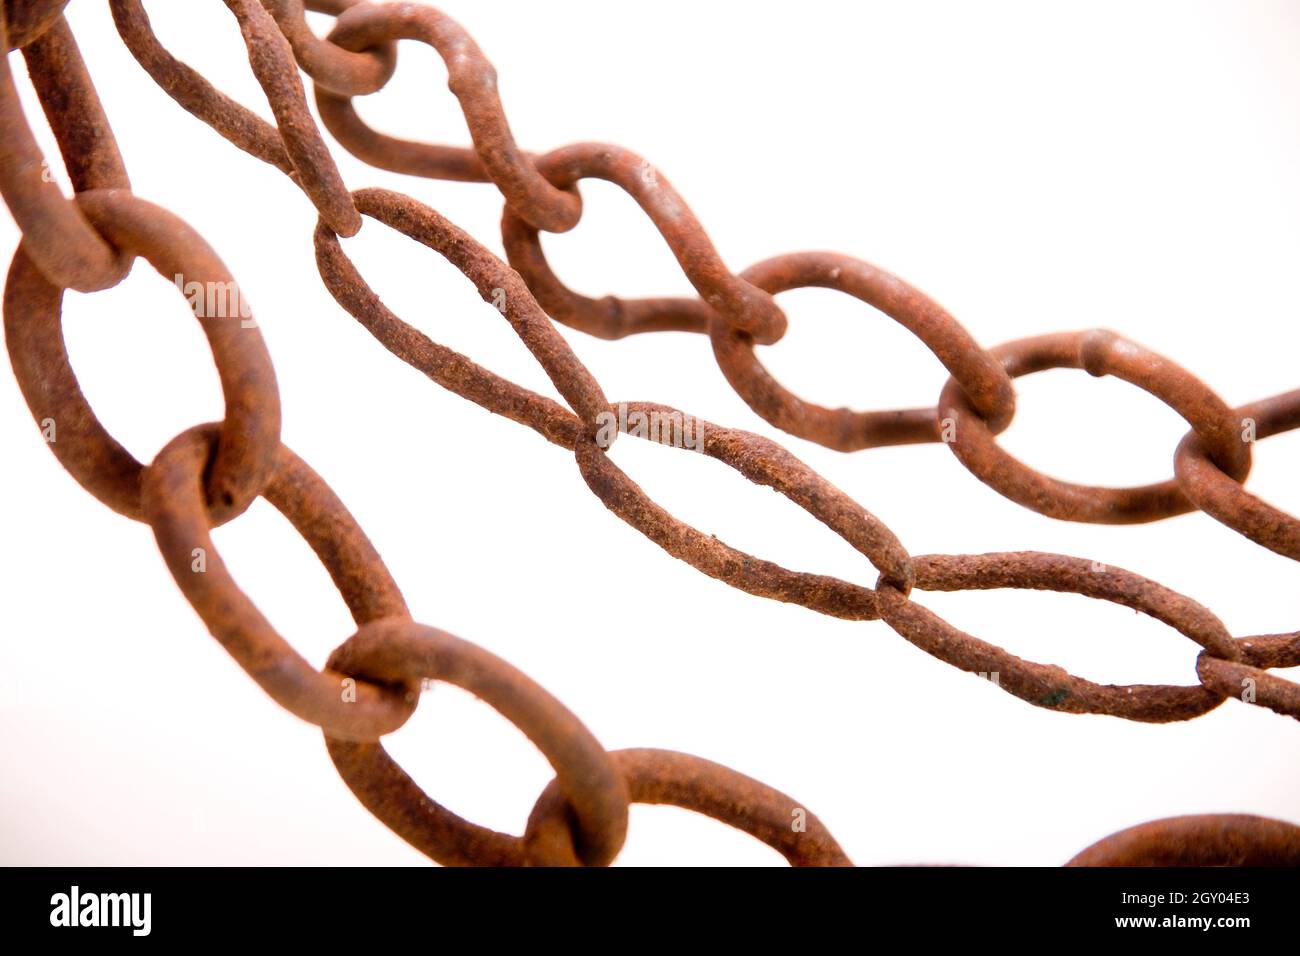 rusty iron chain, cutout Stock Photo